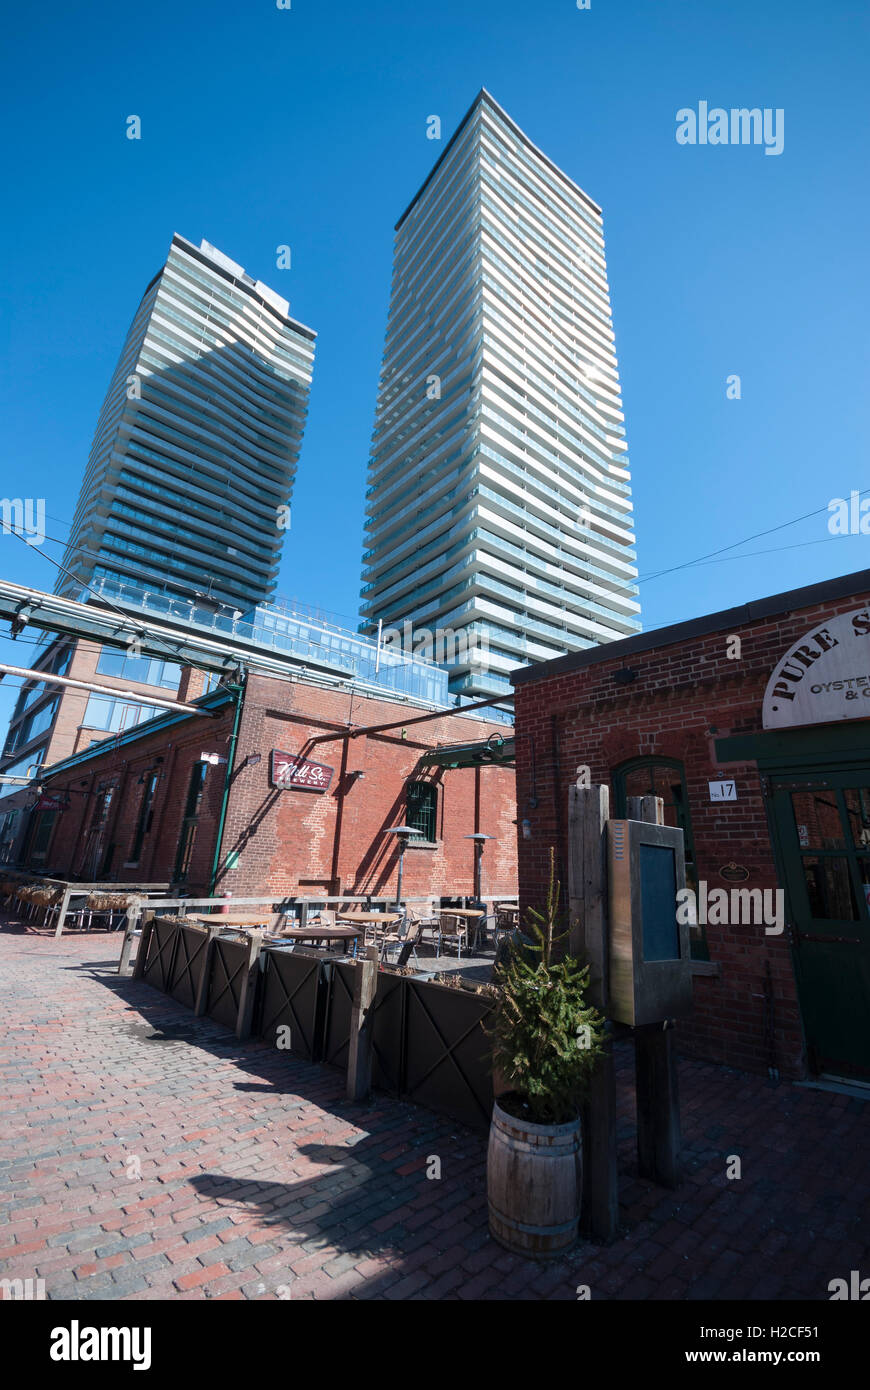 Storici e moderni edifici che coesistono in distilleria, una destinazione turistica e residenziale nel centro di Toronto in Canada Foto Stock